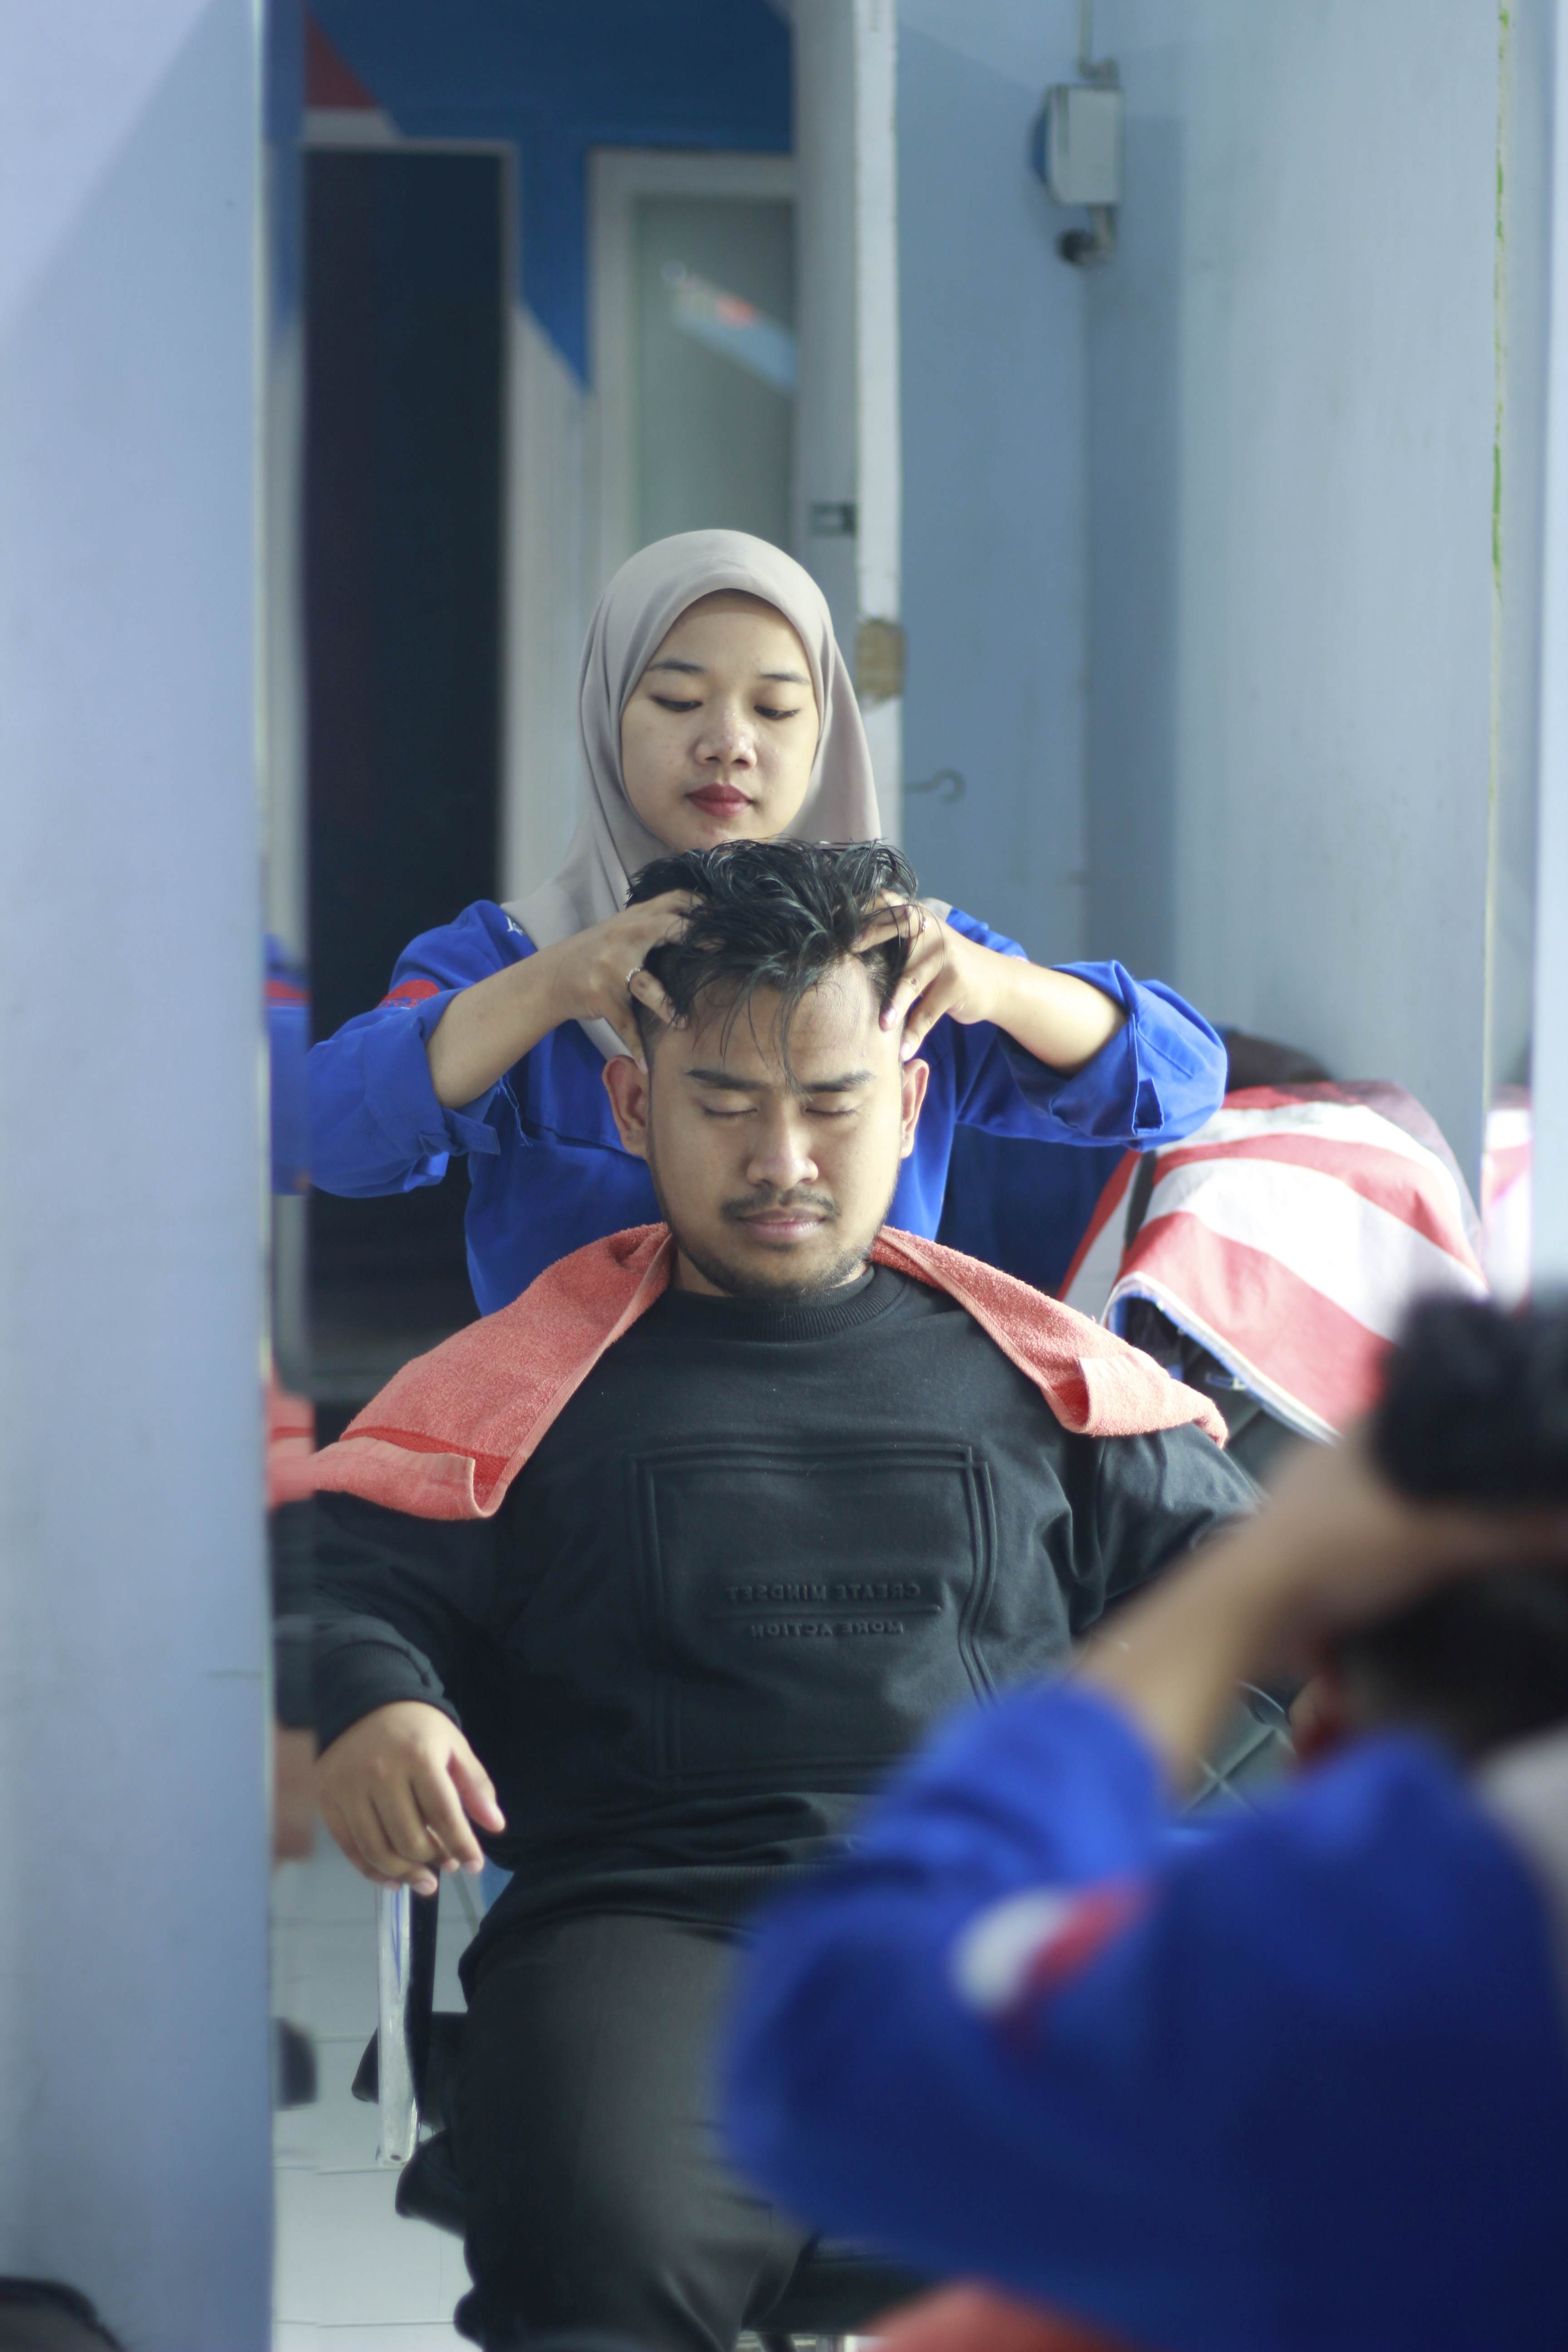 Harga Cukur Rambut Di Kelurahan Tlogowaru Murah